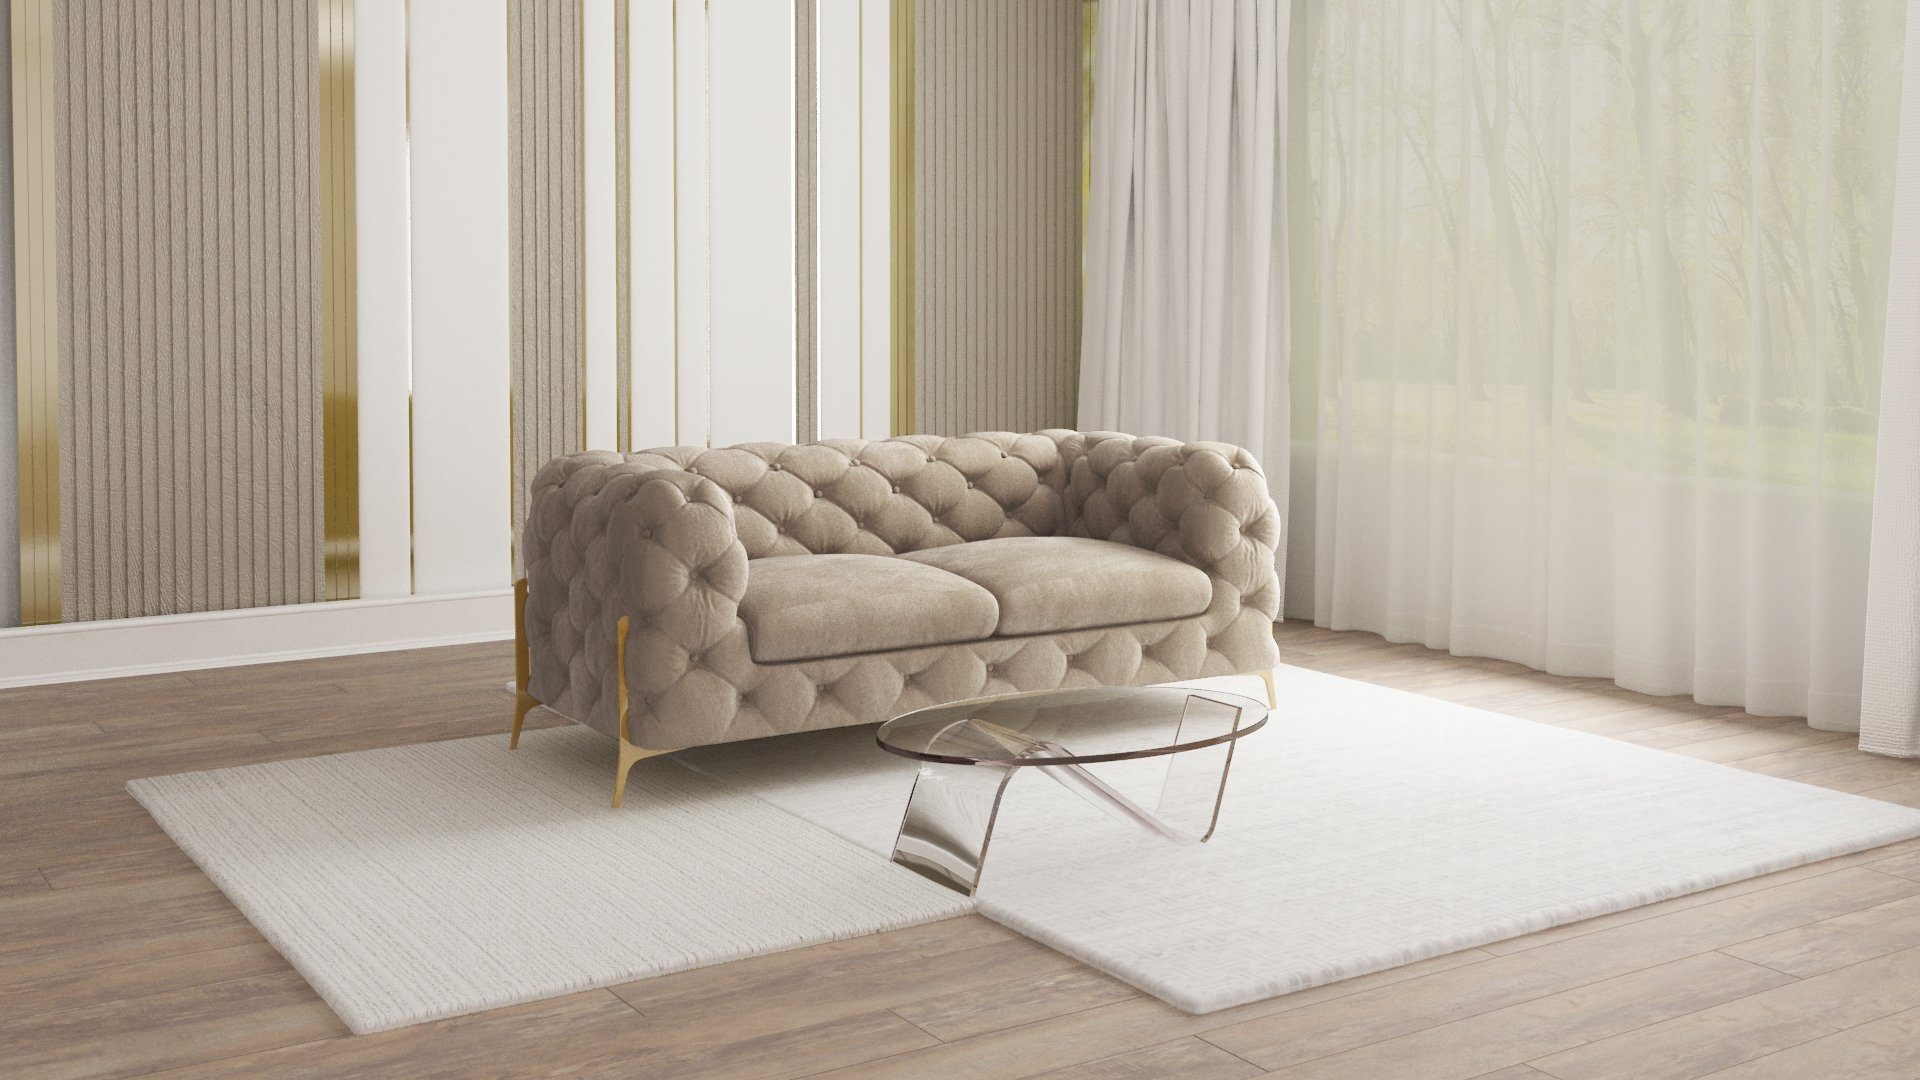 S-Style Меблі 2-Sitzer Ashley Chesterfield Sofa mit Goldene Metall Füßen, mit Wellenfederung